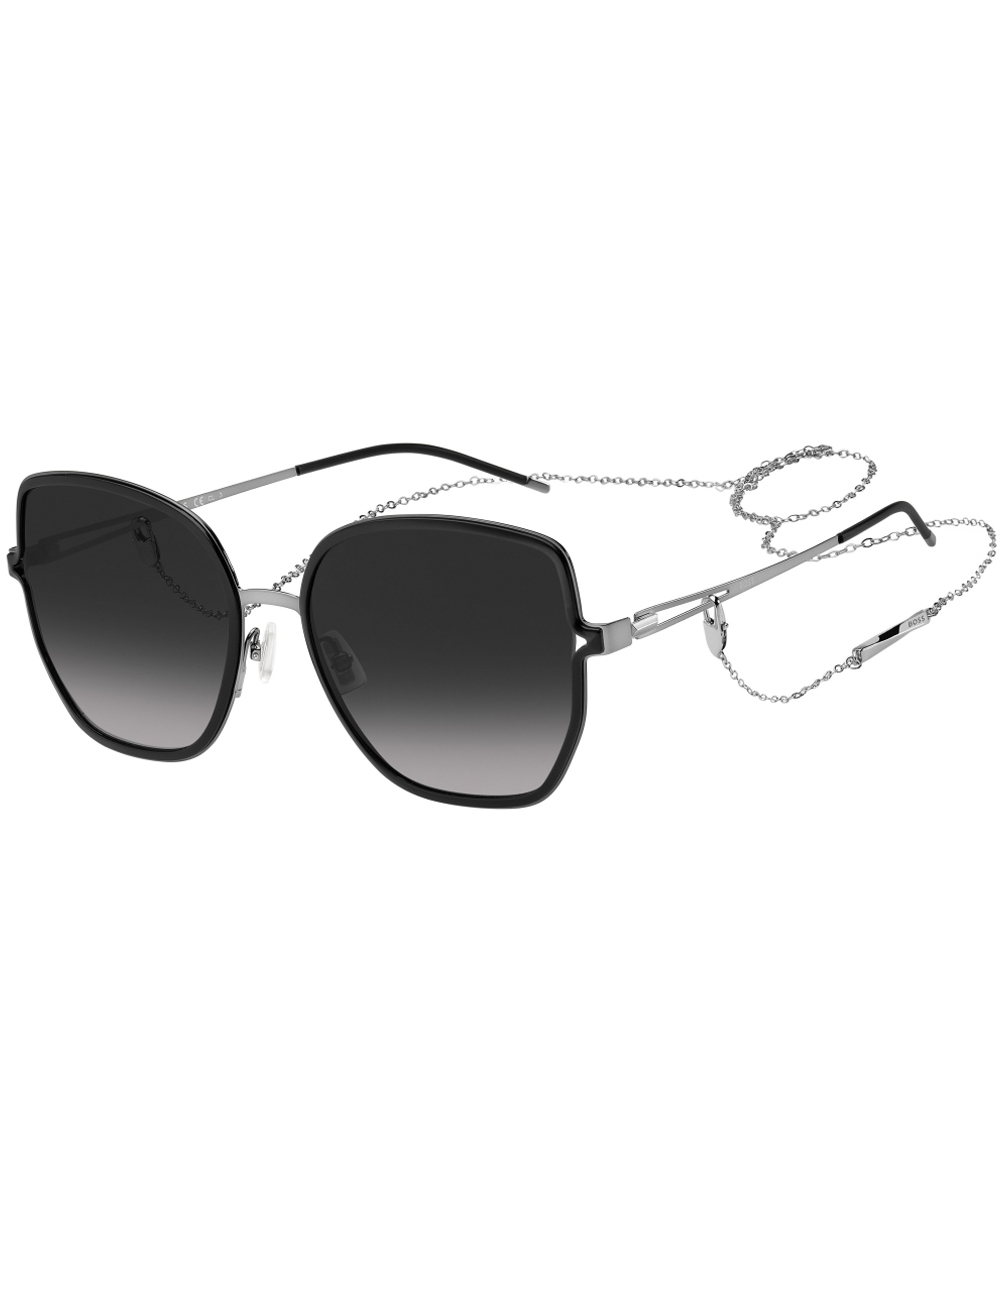 Солнцезащитные очки женские HUGO BOSS 1392/S черные